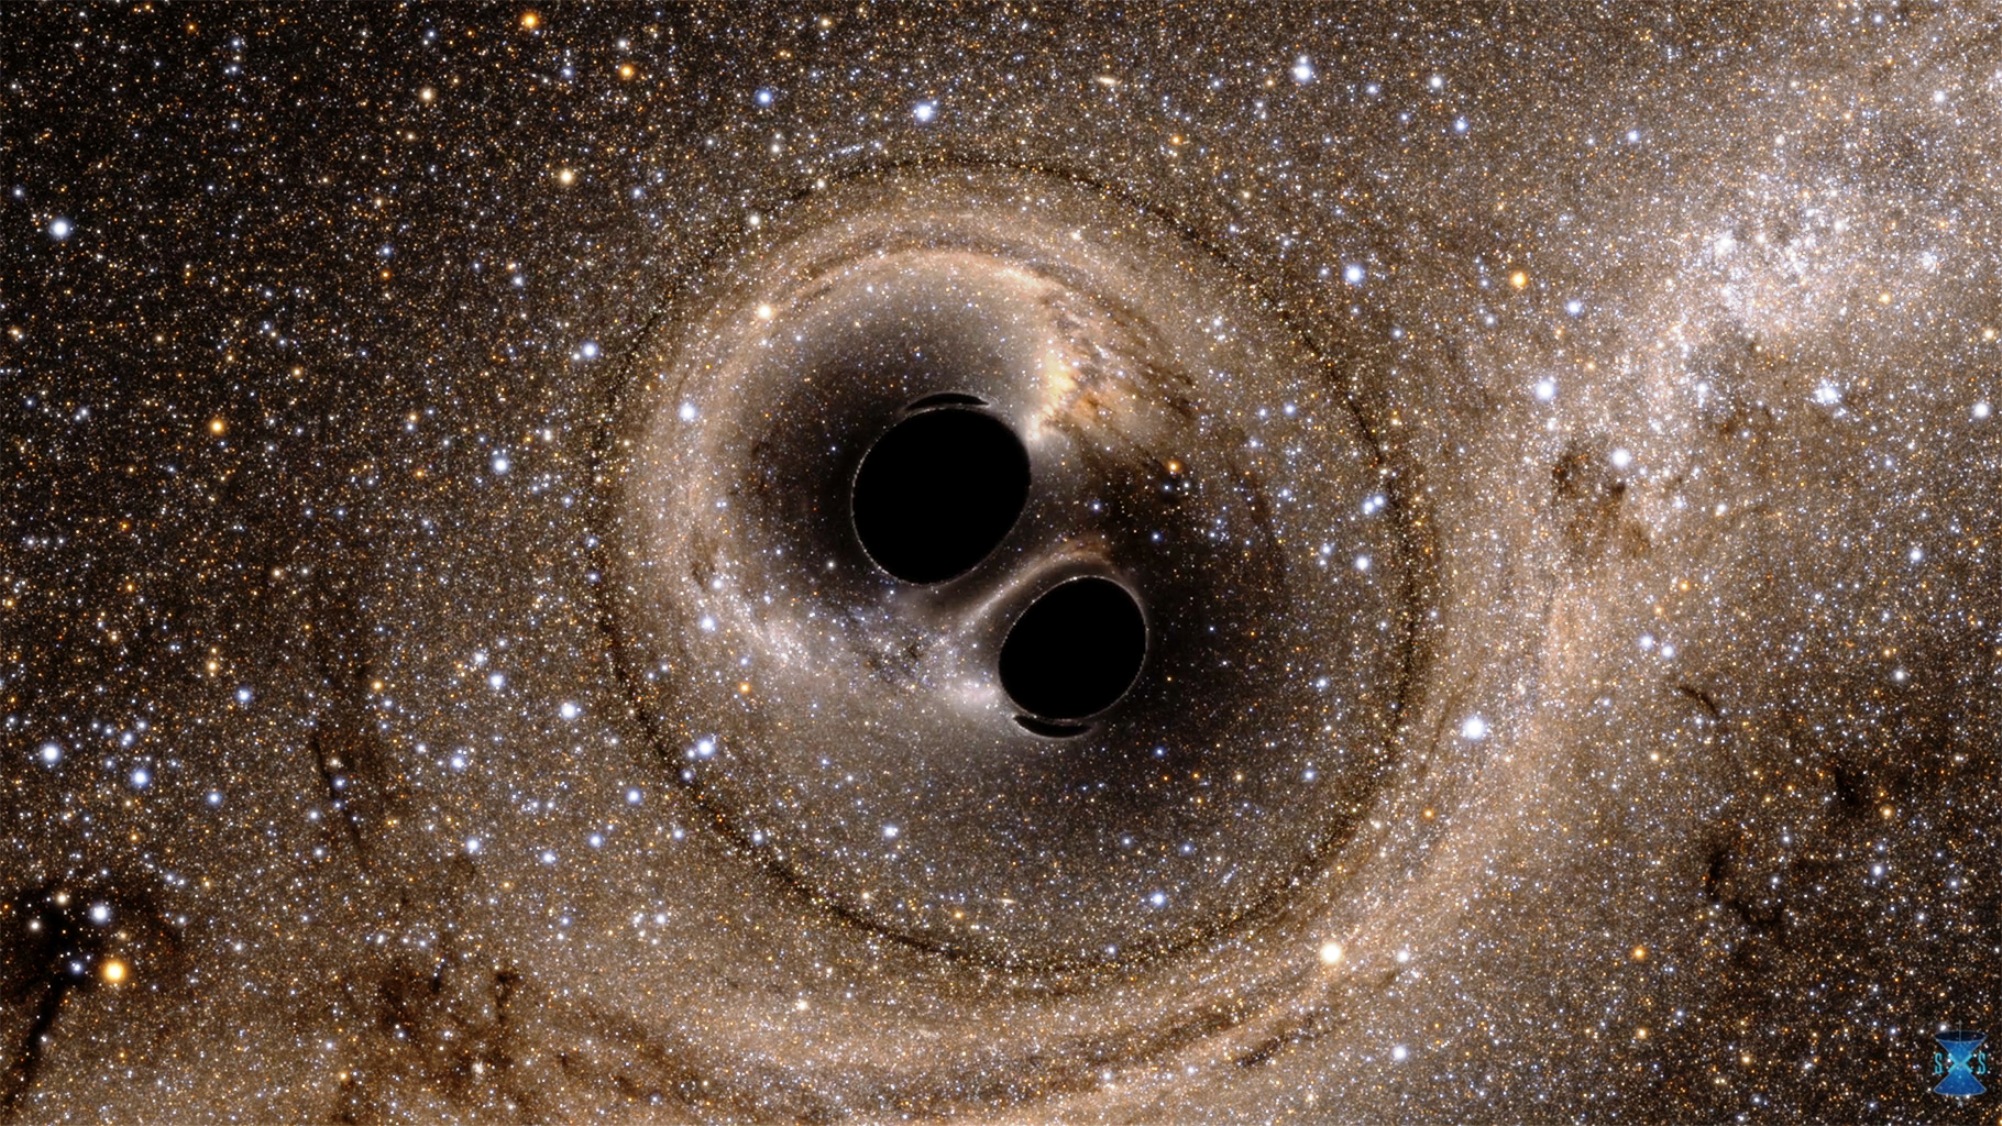 Ligo (Laser Interferometer Gravitational-Wave Observatory) a permis de détecter l'onde gravitationnelle produite par la collision puis la fusion de deux trous noirs d'environ 30 masses solaires chacun. À quoi aurait ressemblé visuellement l'évènement pour des observateurs installés à quelques milliers de kilomètres ? Des simulations numériques permettent de le découvrir ; cette image, qui illustre des effets de lentille gravitationnelle, est extraite de l'une d'elles. © SXS (Simulating eXtreme Spacetimes project) 